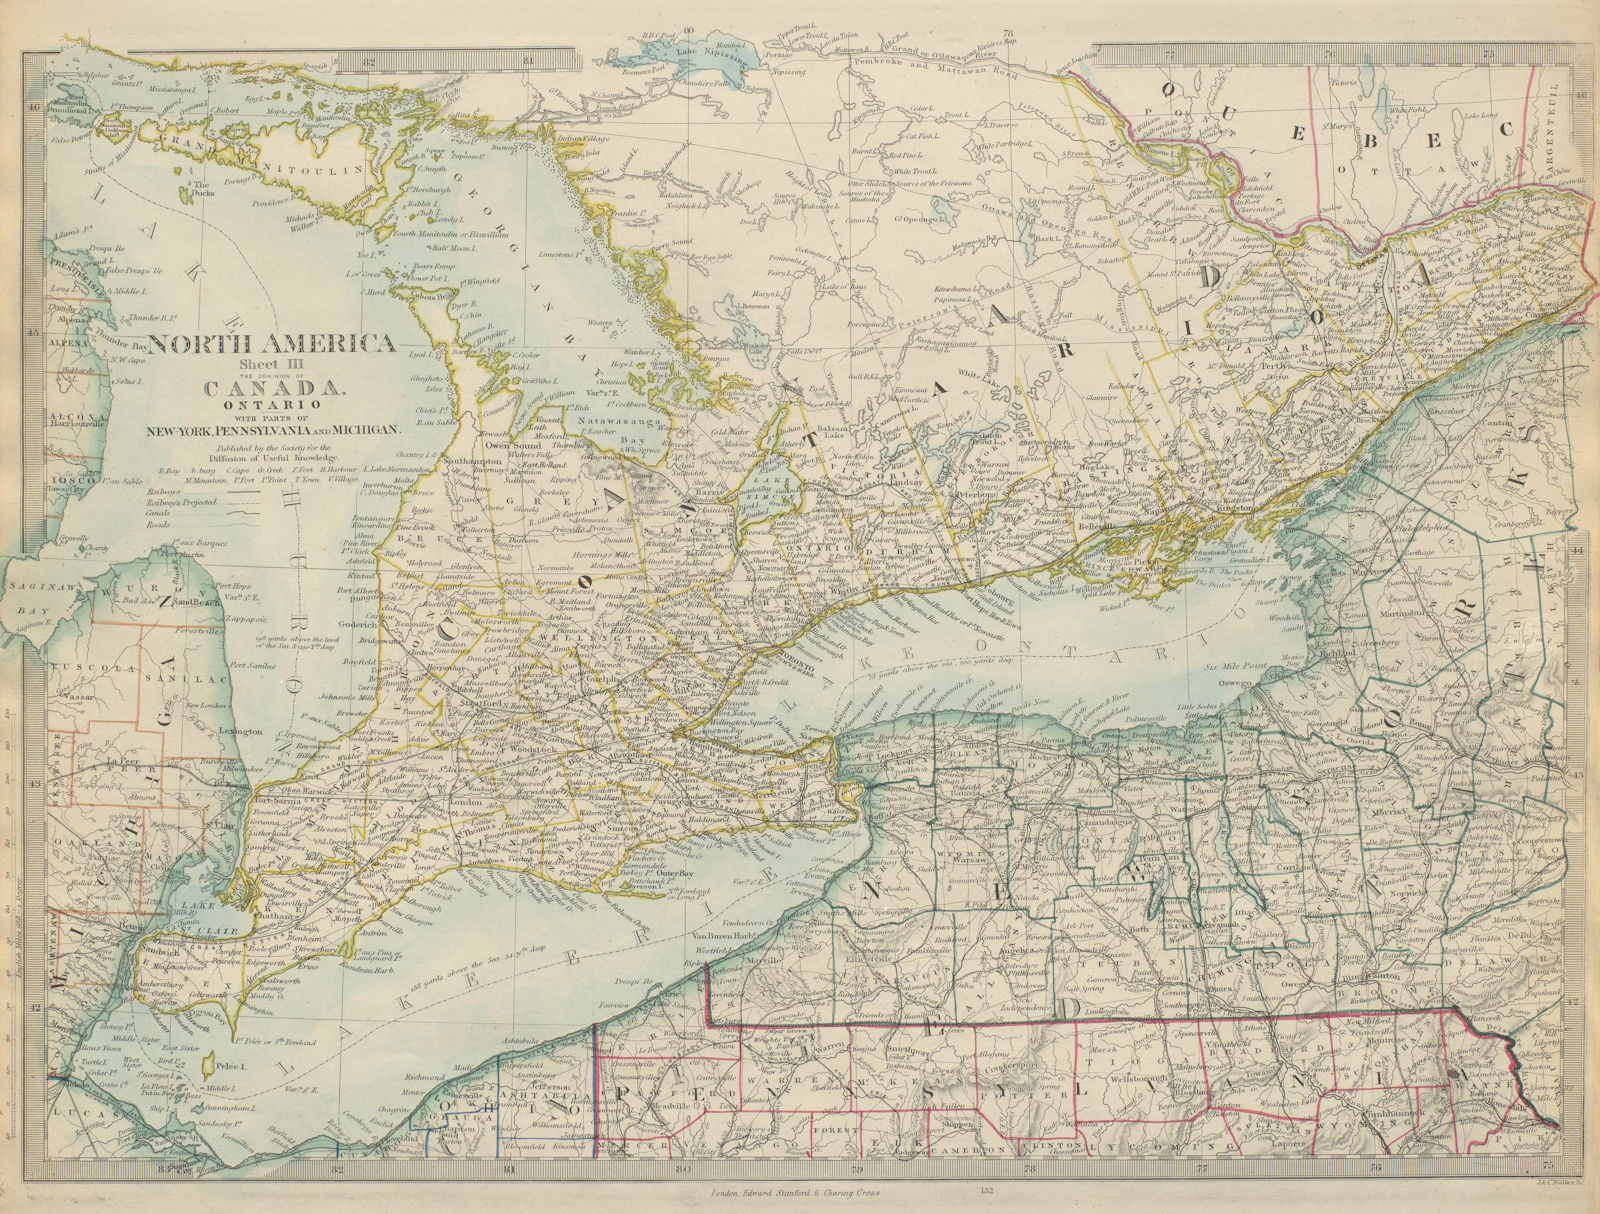 GREAT LAKES & SOUTHERN ONTARIO. Lakes Huron, Erie & Ontario. SDUK 1874 old map